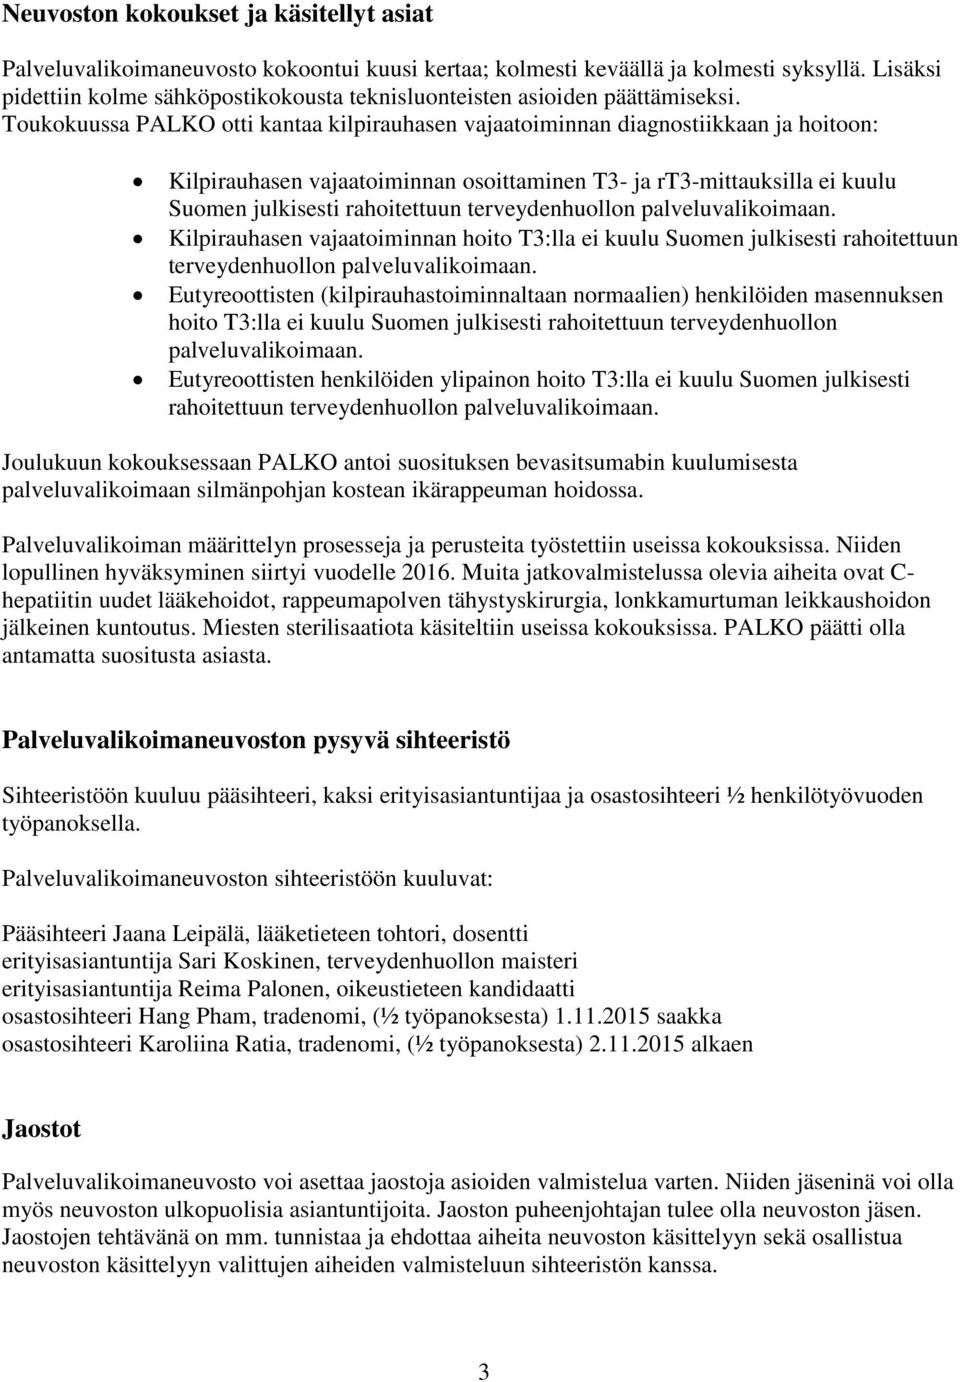 Toukokuussa PALKO otti kantaa kilpirauhasen vajaatoiminnan diagnostiikkaan ja hoitoon: Kilpirauhasen vajaatoiminnan osoittaminen T3- ja rt3-mittauksilla ei kuulu Suomen julkisesti rahoitettuun